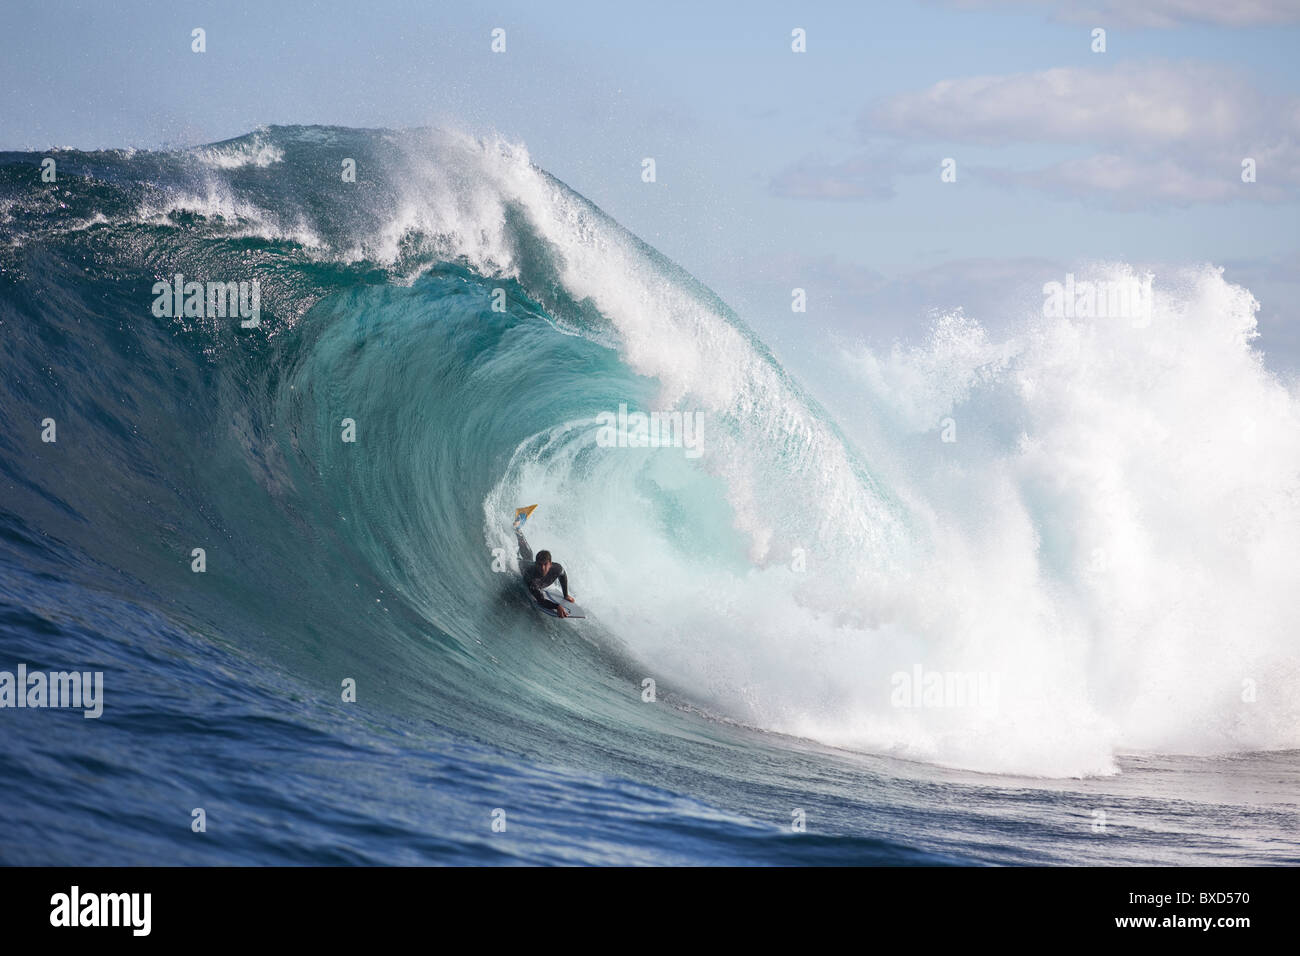 Ein Surfer Bodyboarden eine gefährliche Welle Shipstern Bluff in Tasmanien. Stockfoto